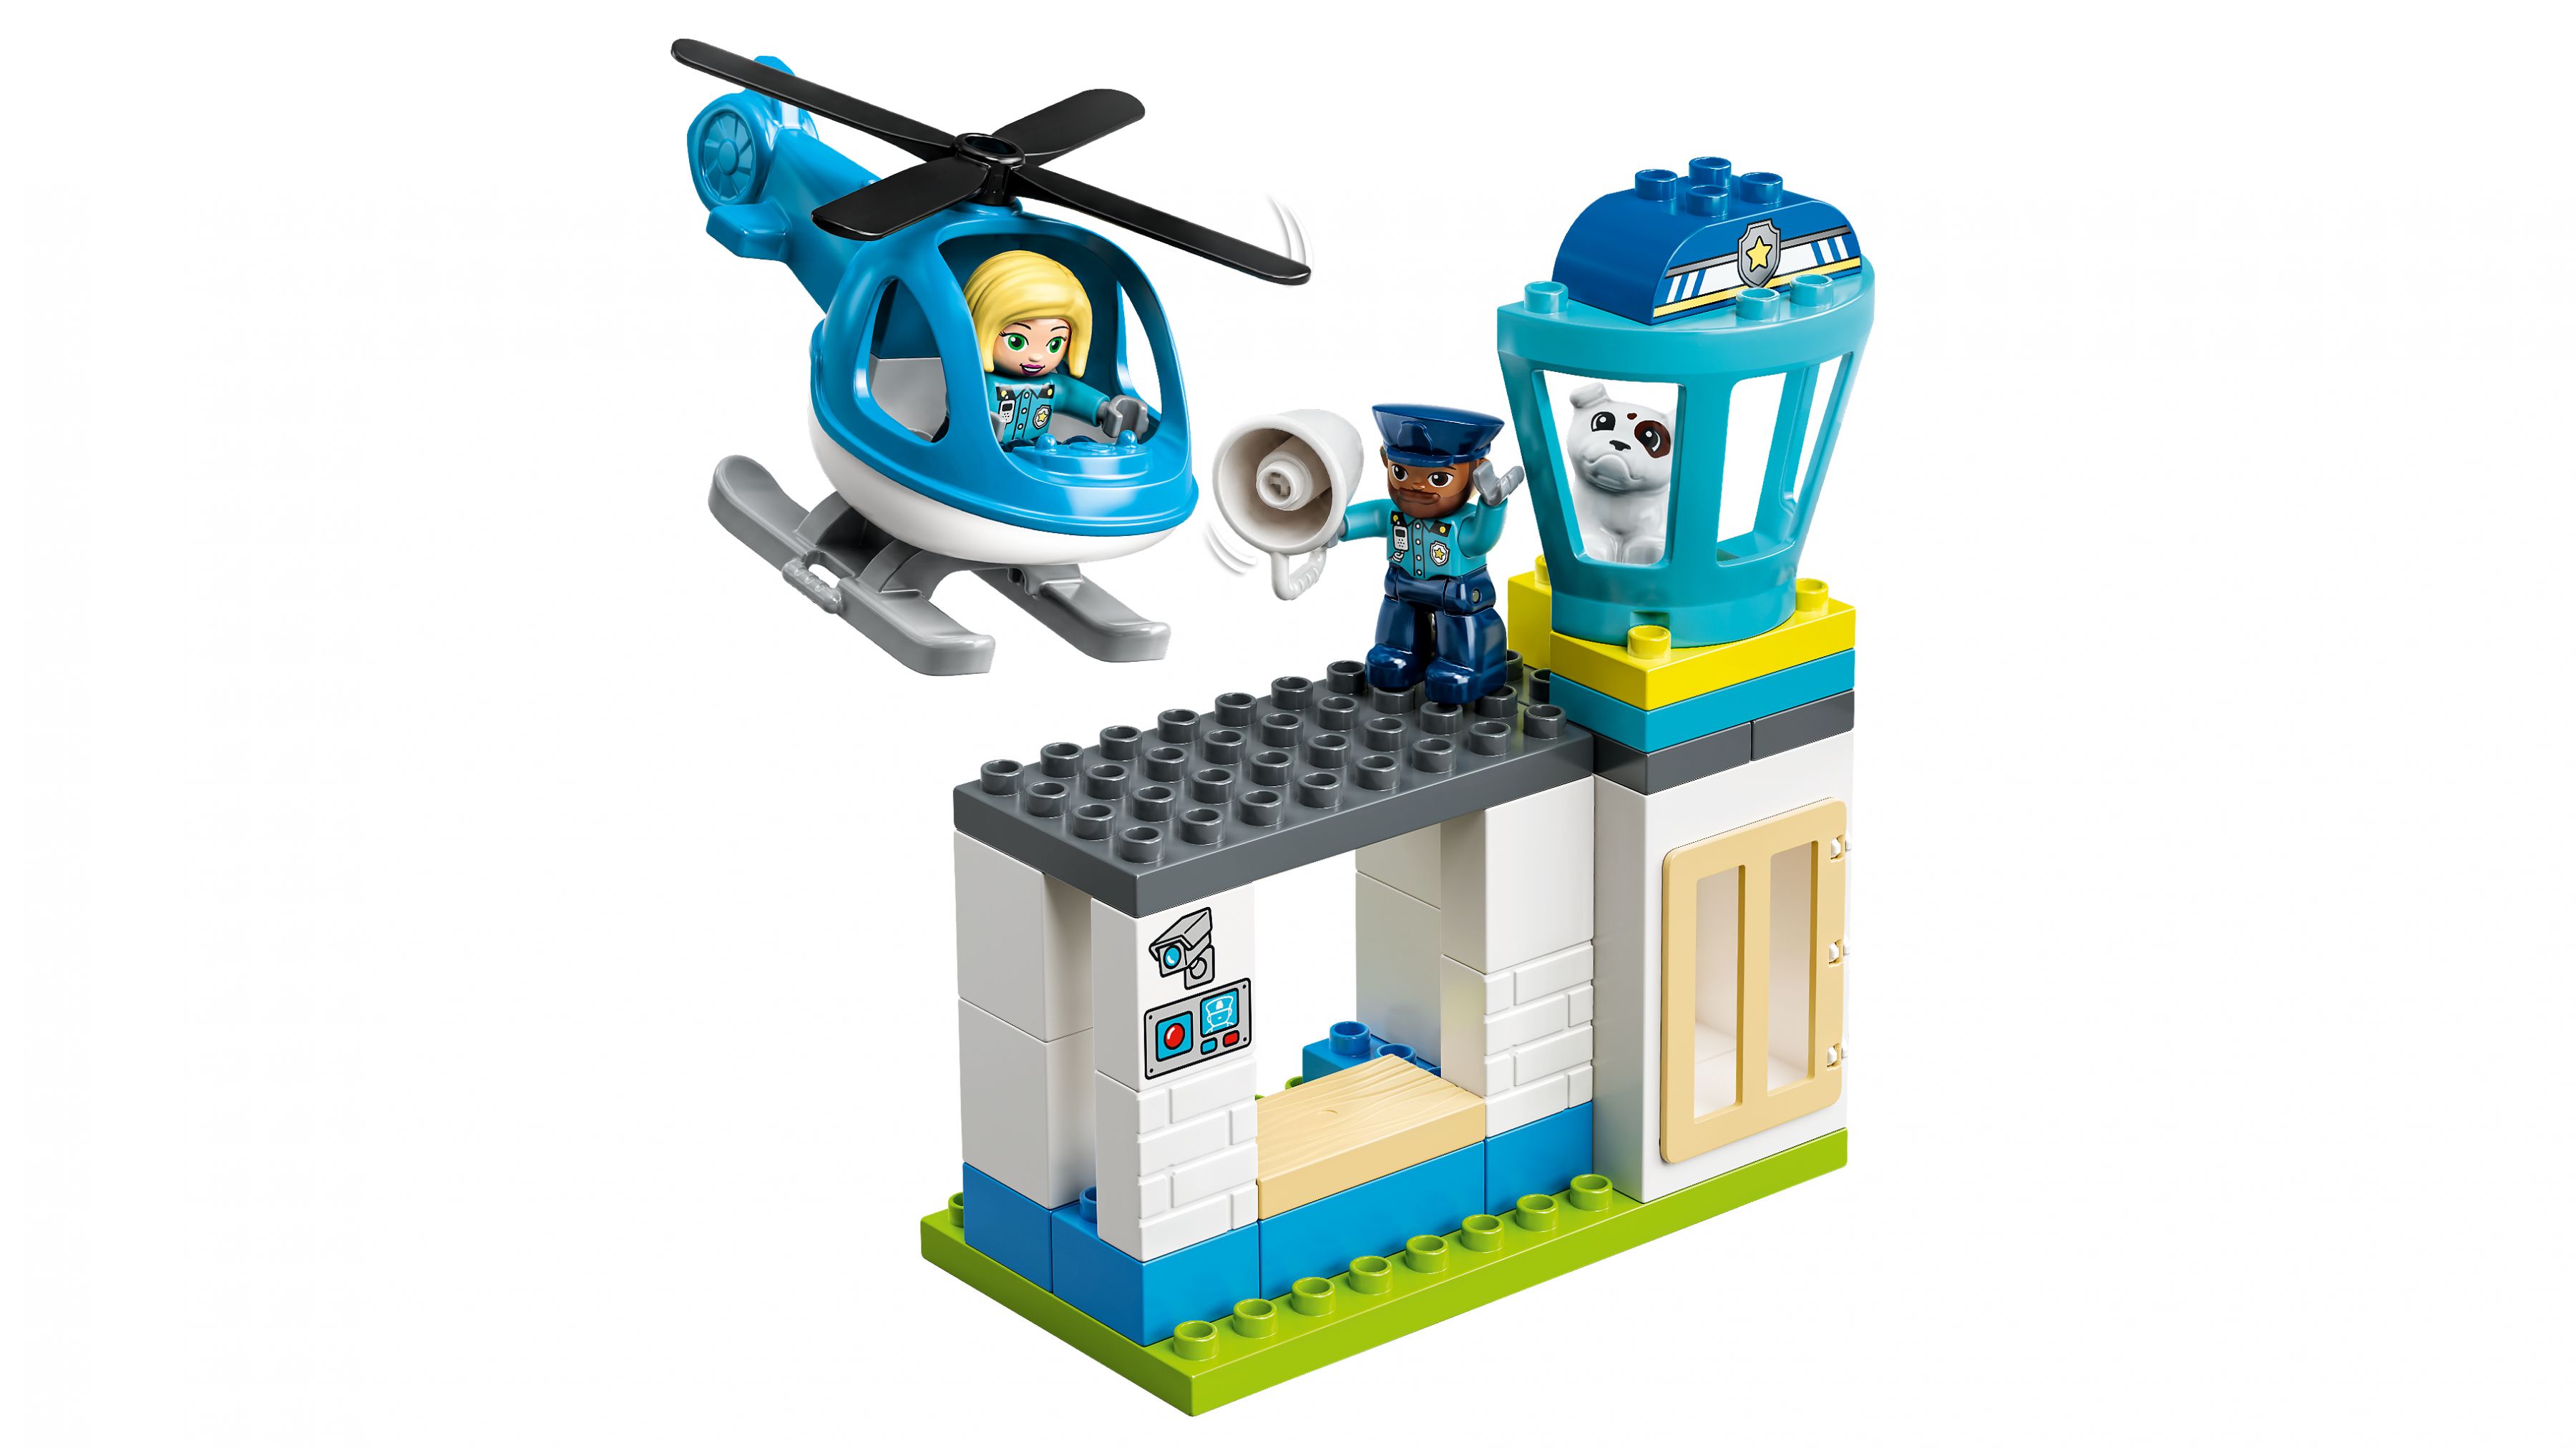 LEGO Duplo 10959 Polizeistation mit Hubschrauber LEGO_10959_WEB_SEC07_NOBG.jpg